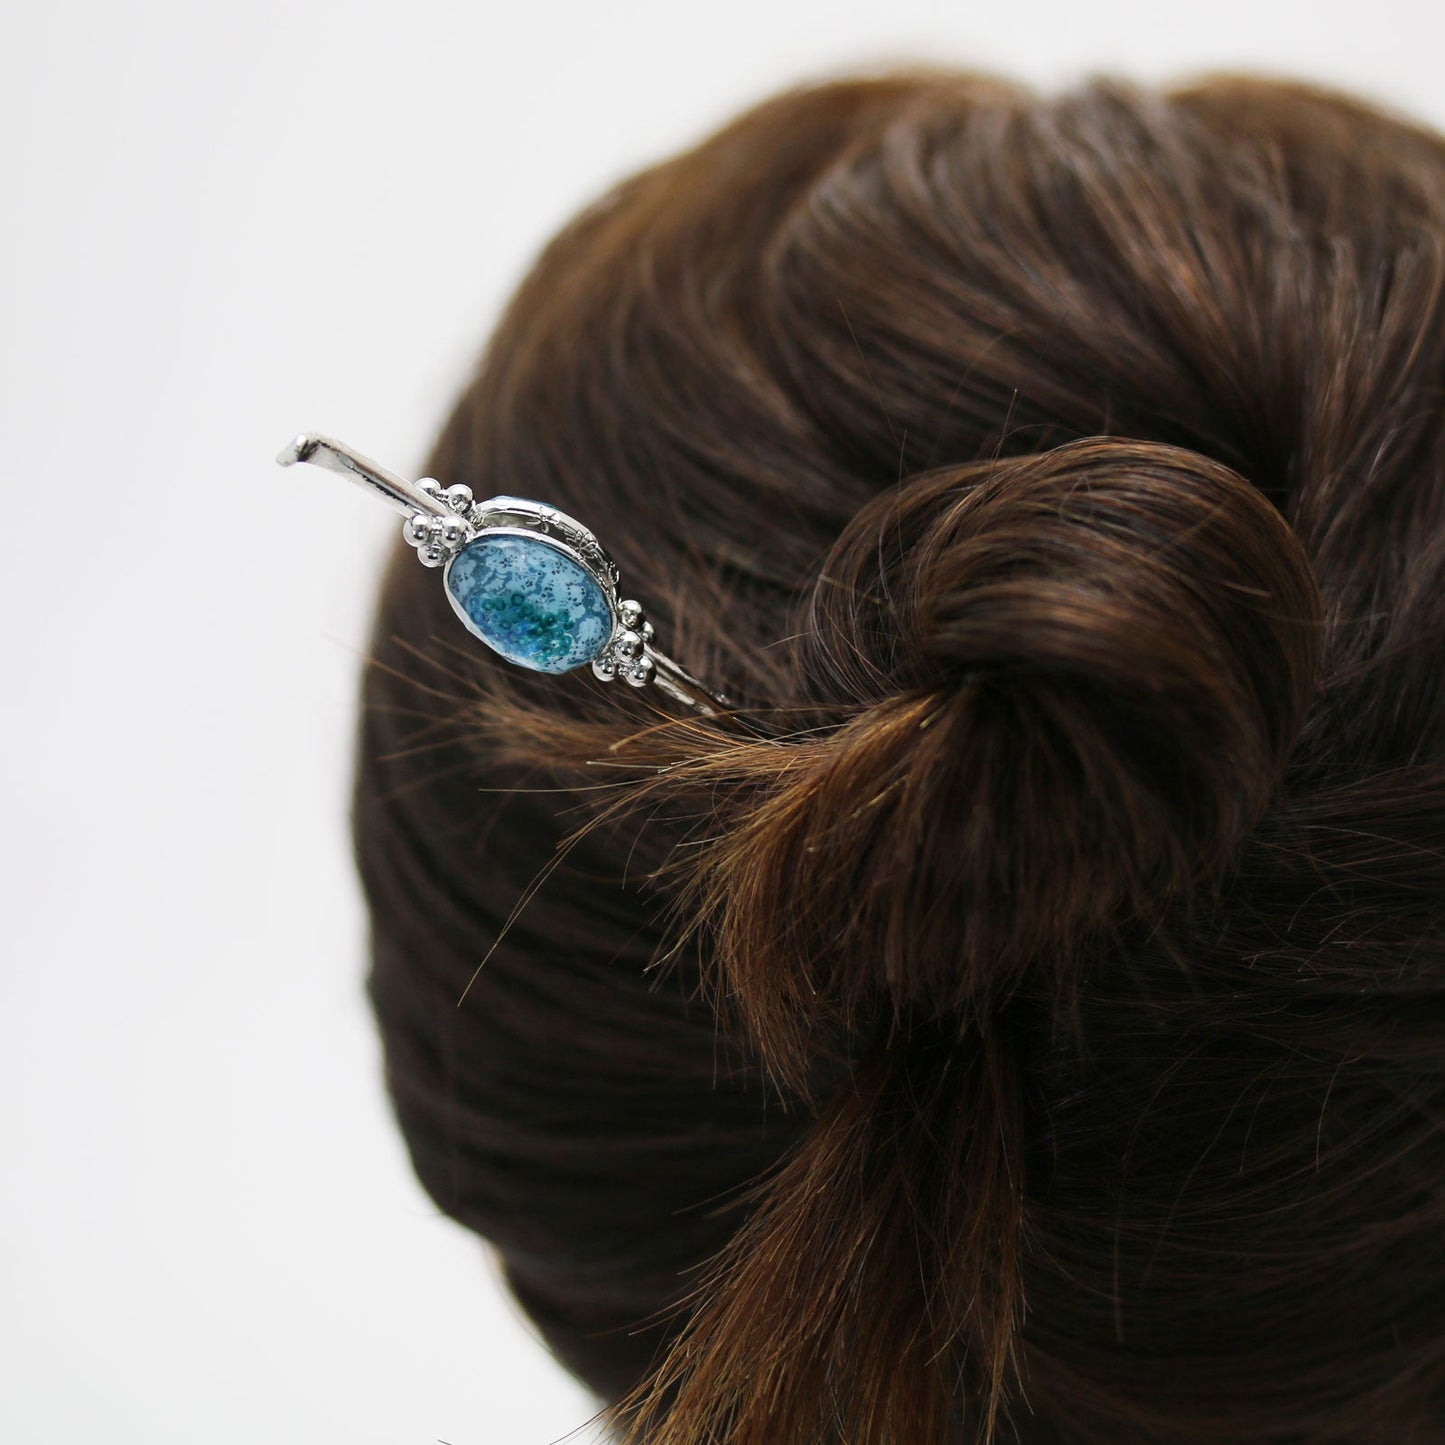 Hairpin Blue Plum Hair Accessory TAMARUSAN